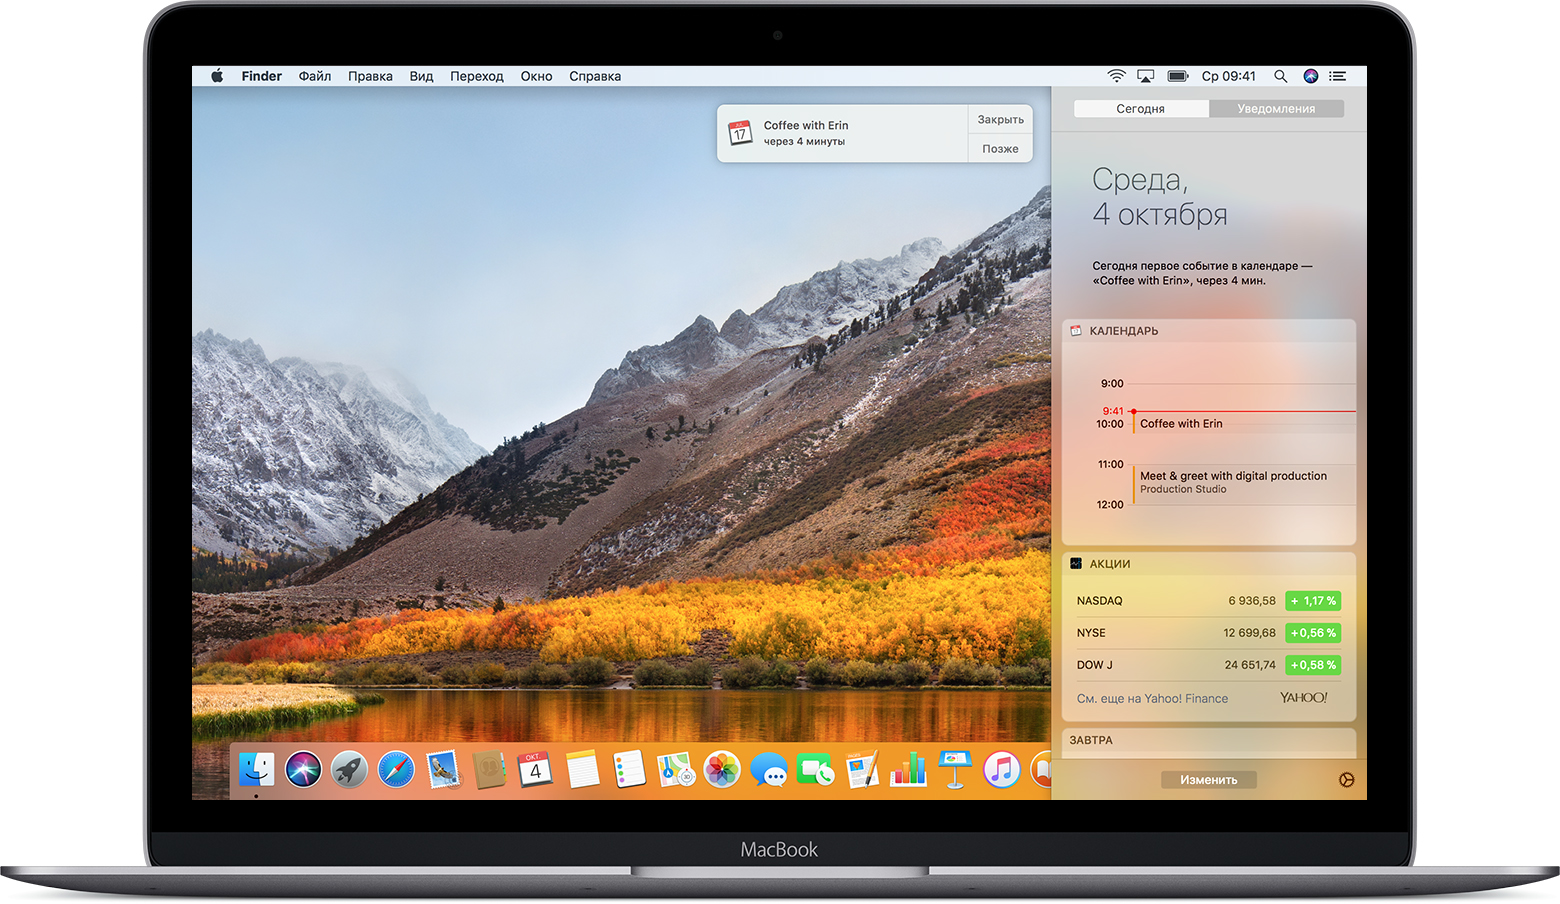 macbook-macos-high-sierra-notifications-